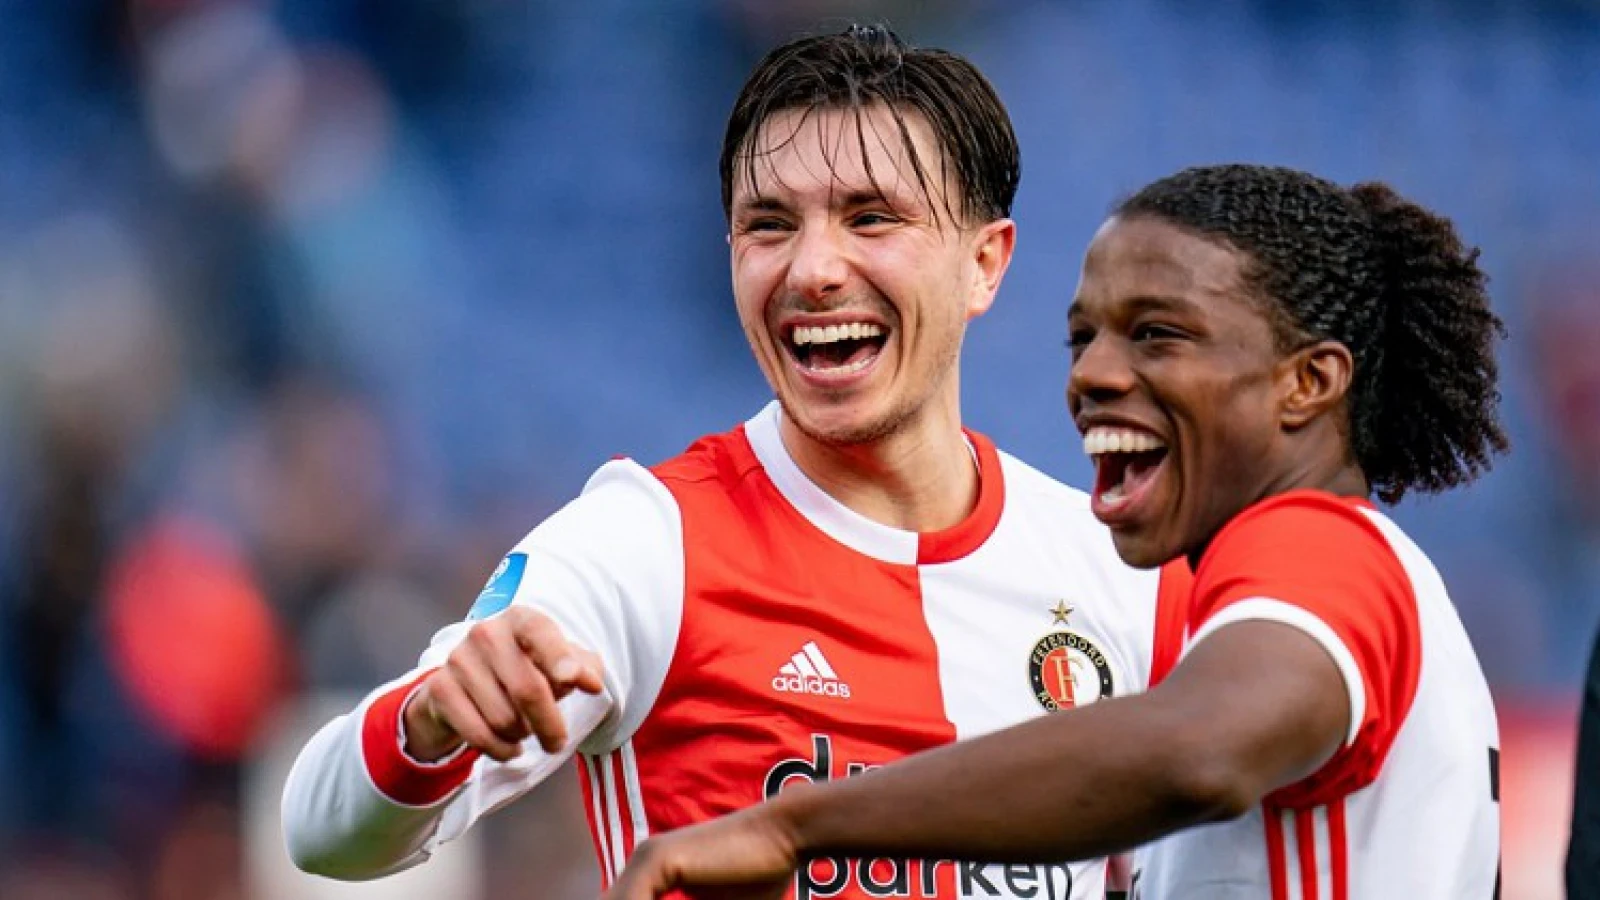 Berghuis wederom beloond voor prachtige prestatie bij Feyenoord